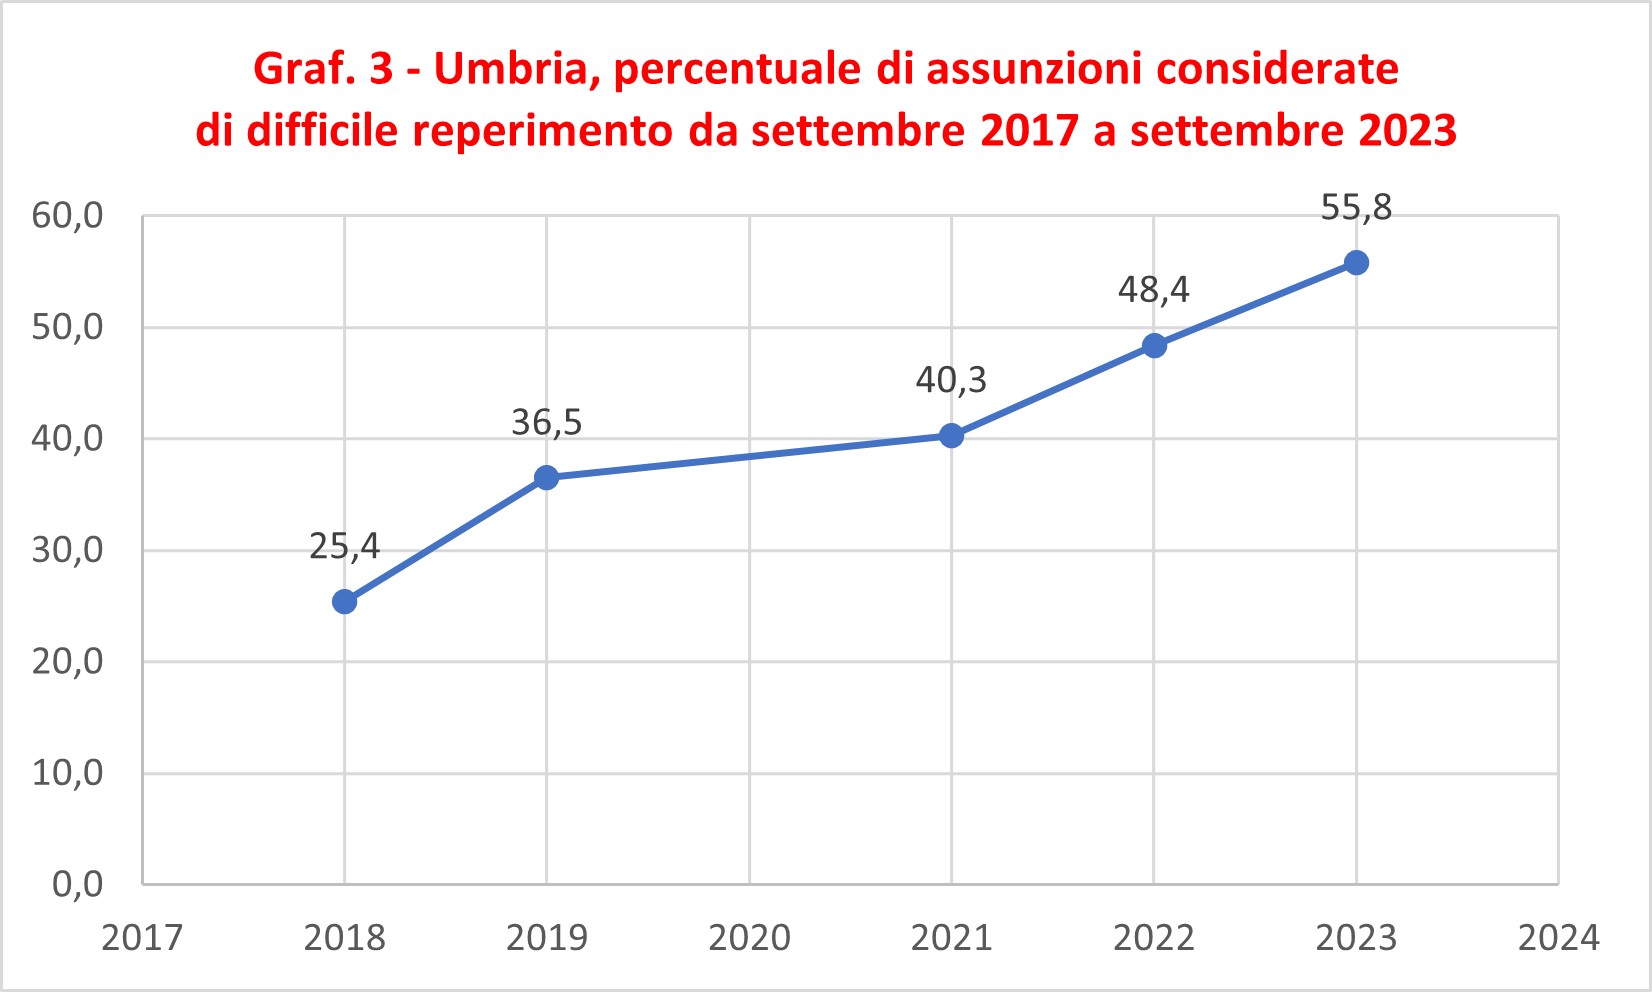 Graf. 3 Umbria percentuale di assunzioni considerate di difficile reperimento da settembre 2018 a settembre 2023